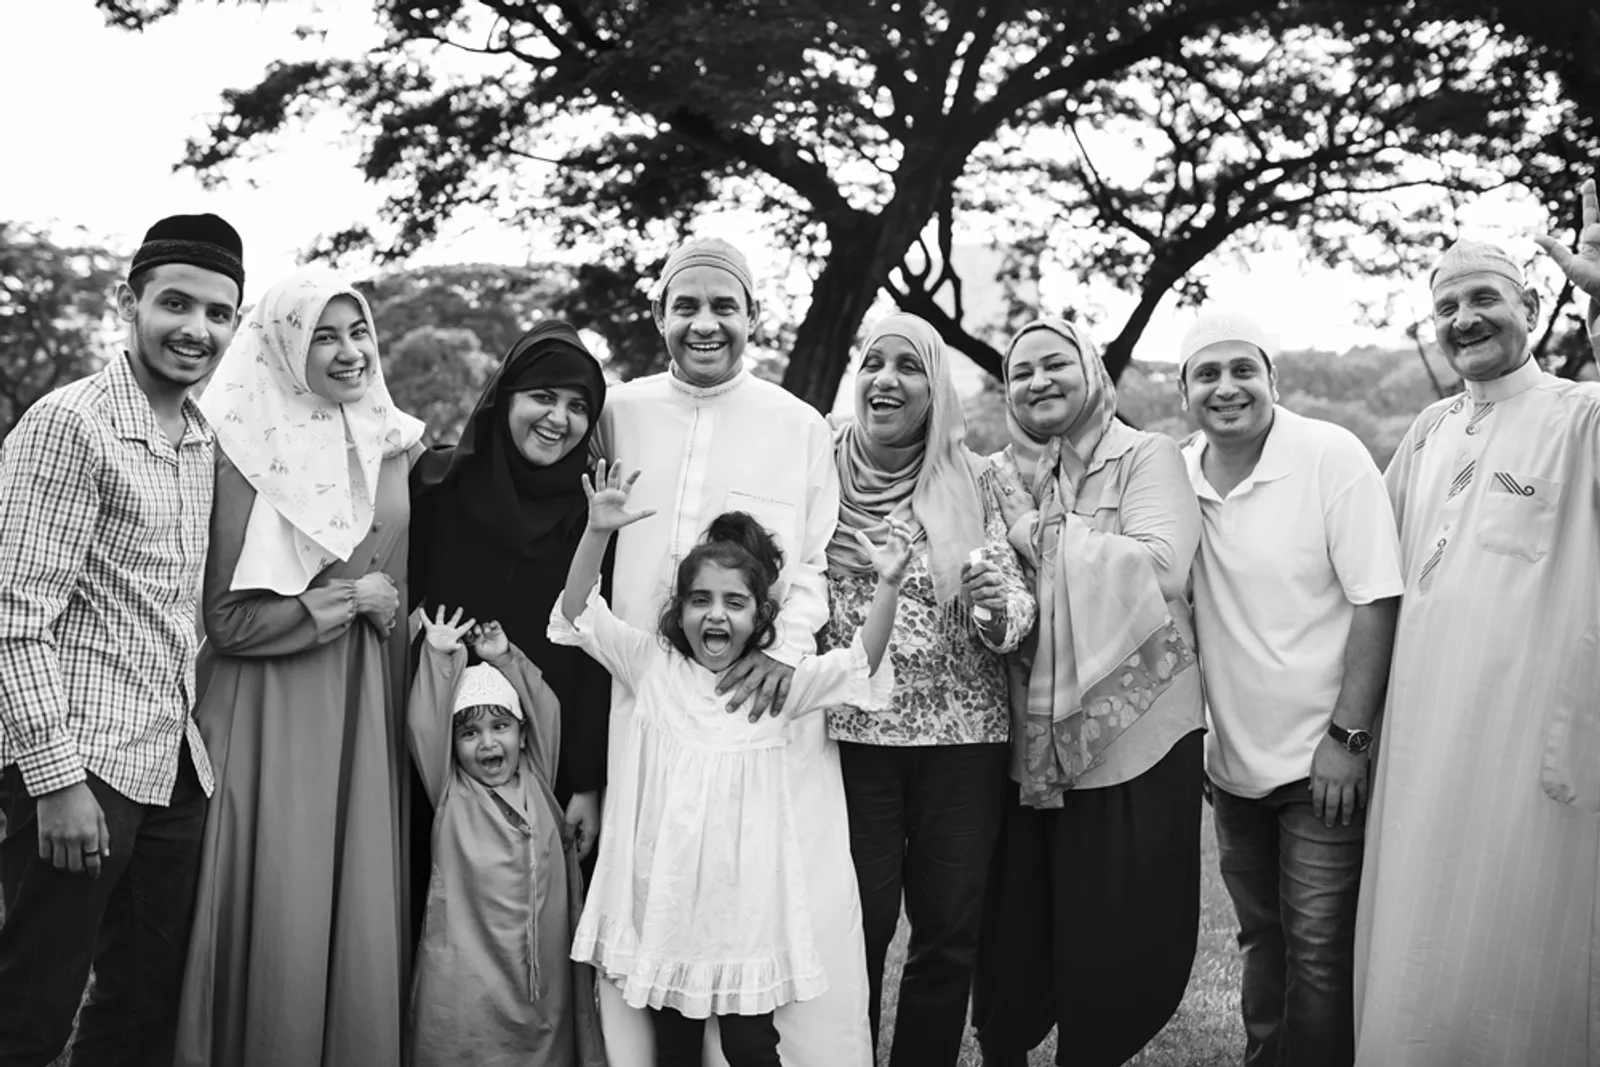 Hak Waris Istri Jika Suami Meninggal Tanpa Anak Menurut Islam